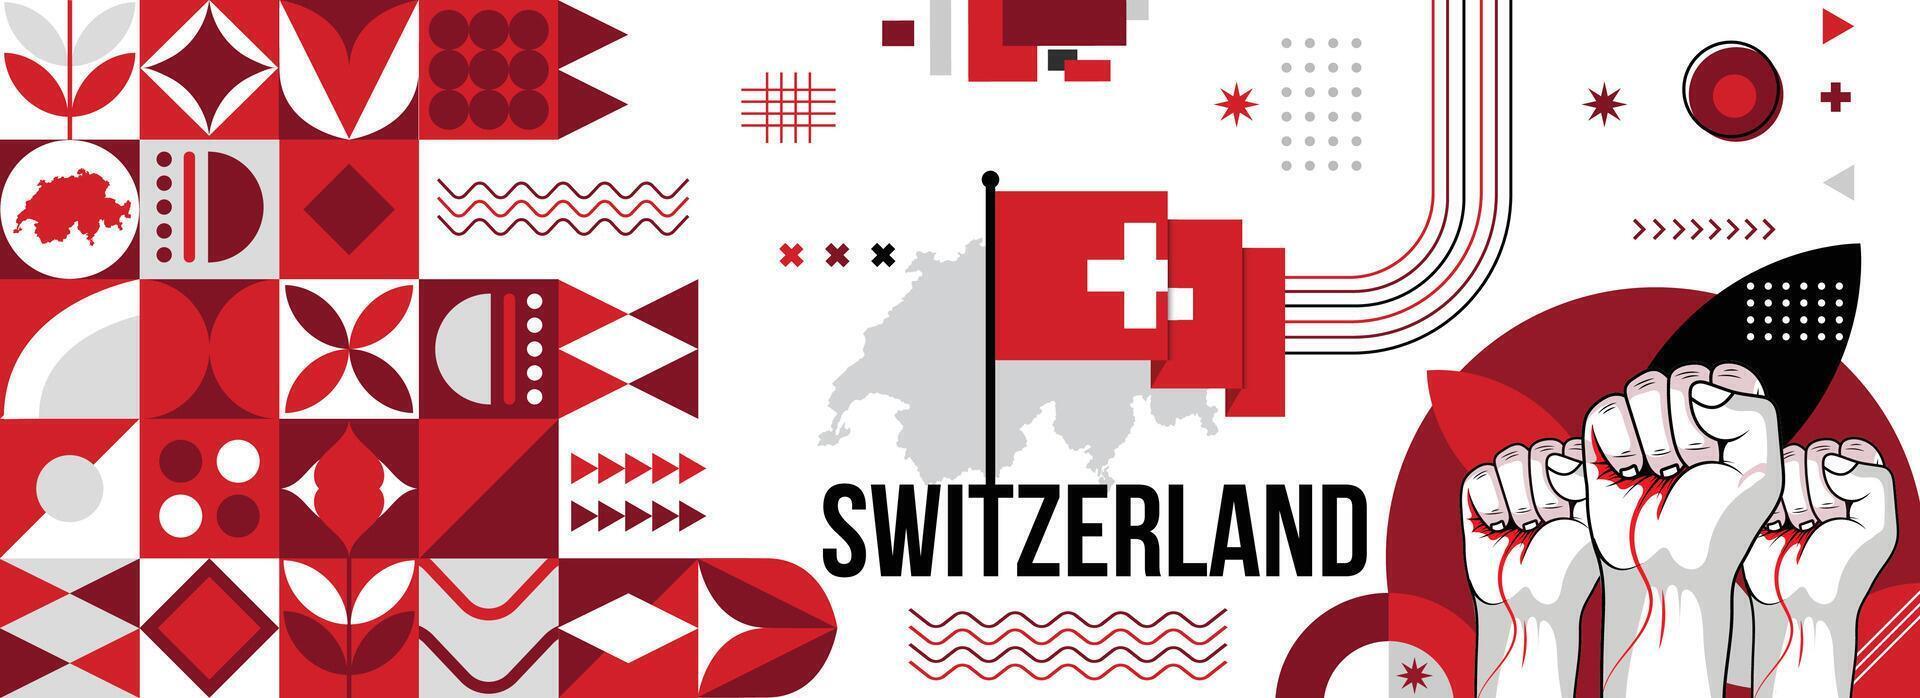 Suiza nacional o independencia día bandera para país celebracion. bandera y mapa de Suiza con elevado puños moderno retro diseño con tiporgafia resumen geométrico iconos vector